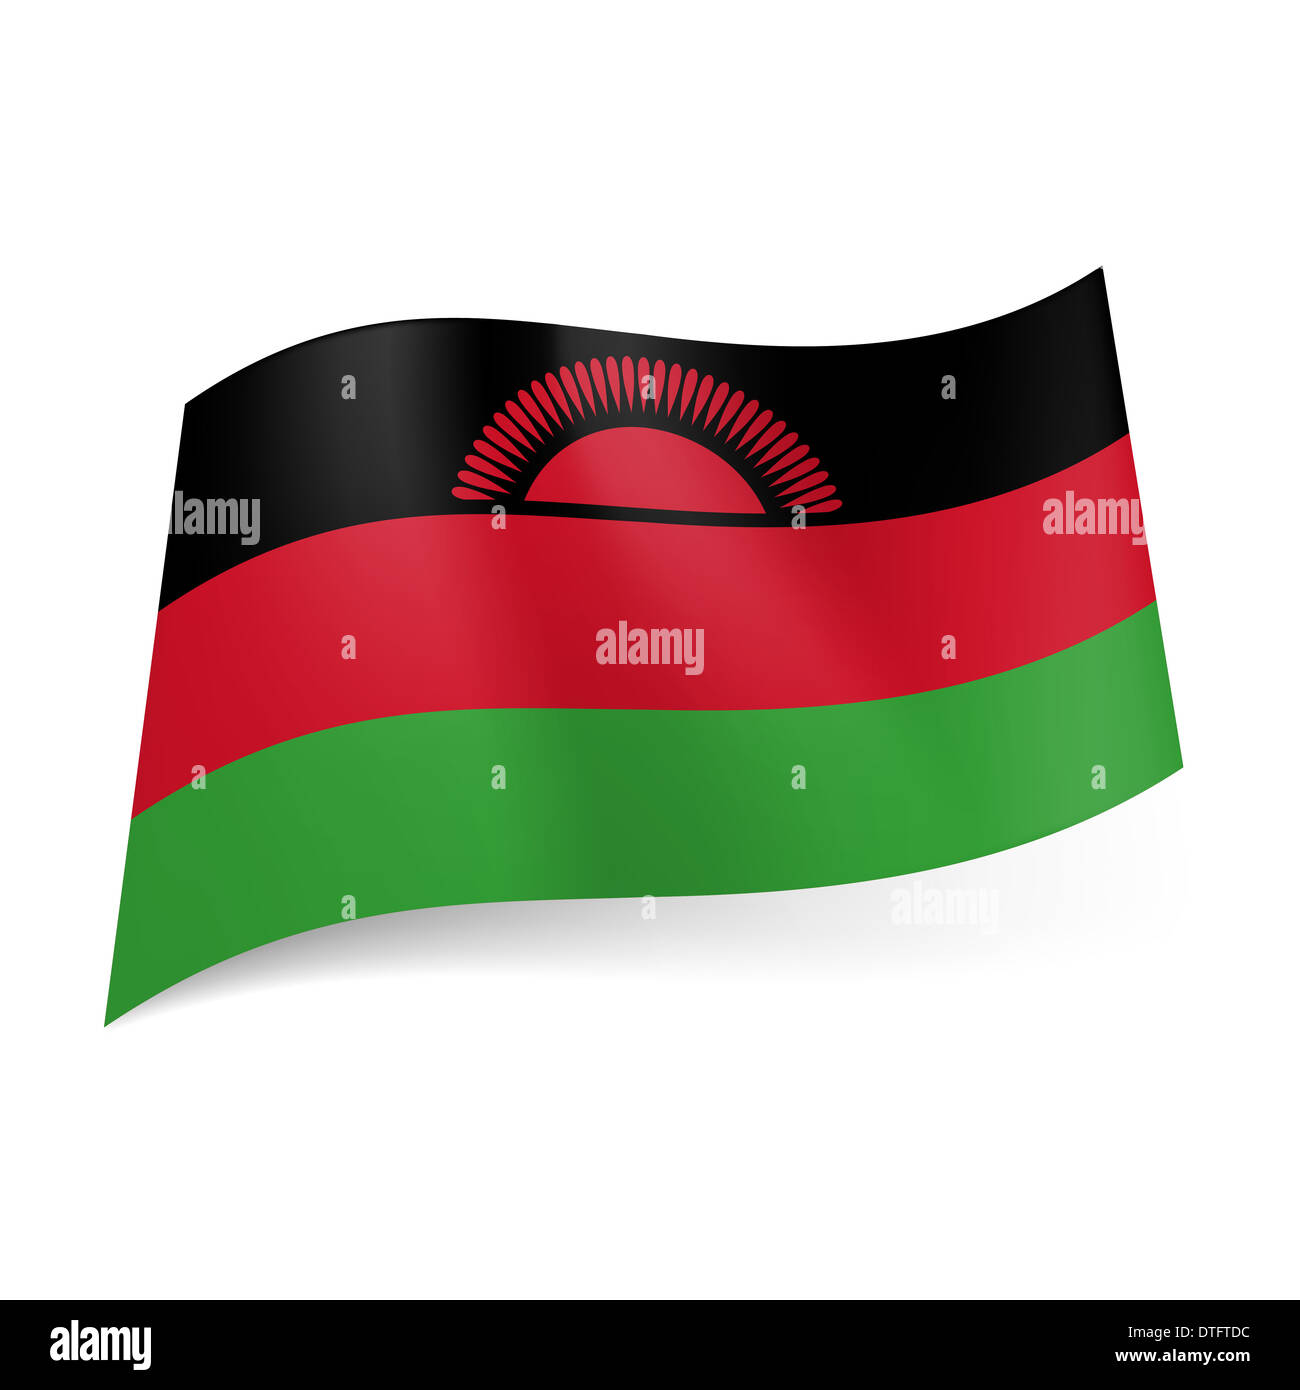 Entender mal guerra Trueno La bandera nacional de Malawi: negro, rojo y verde con rayas horizontales  de color rojo sol naciente en la banda negra Fotografía de stock - Alamy